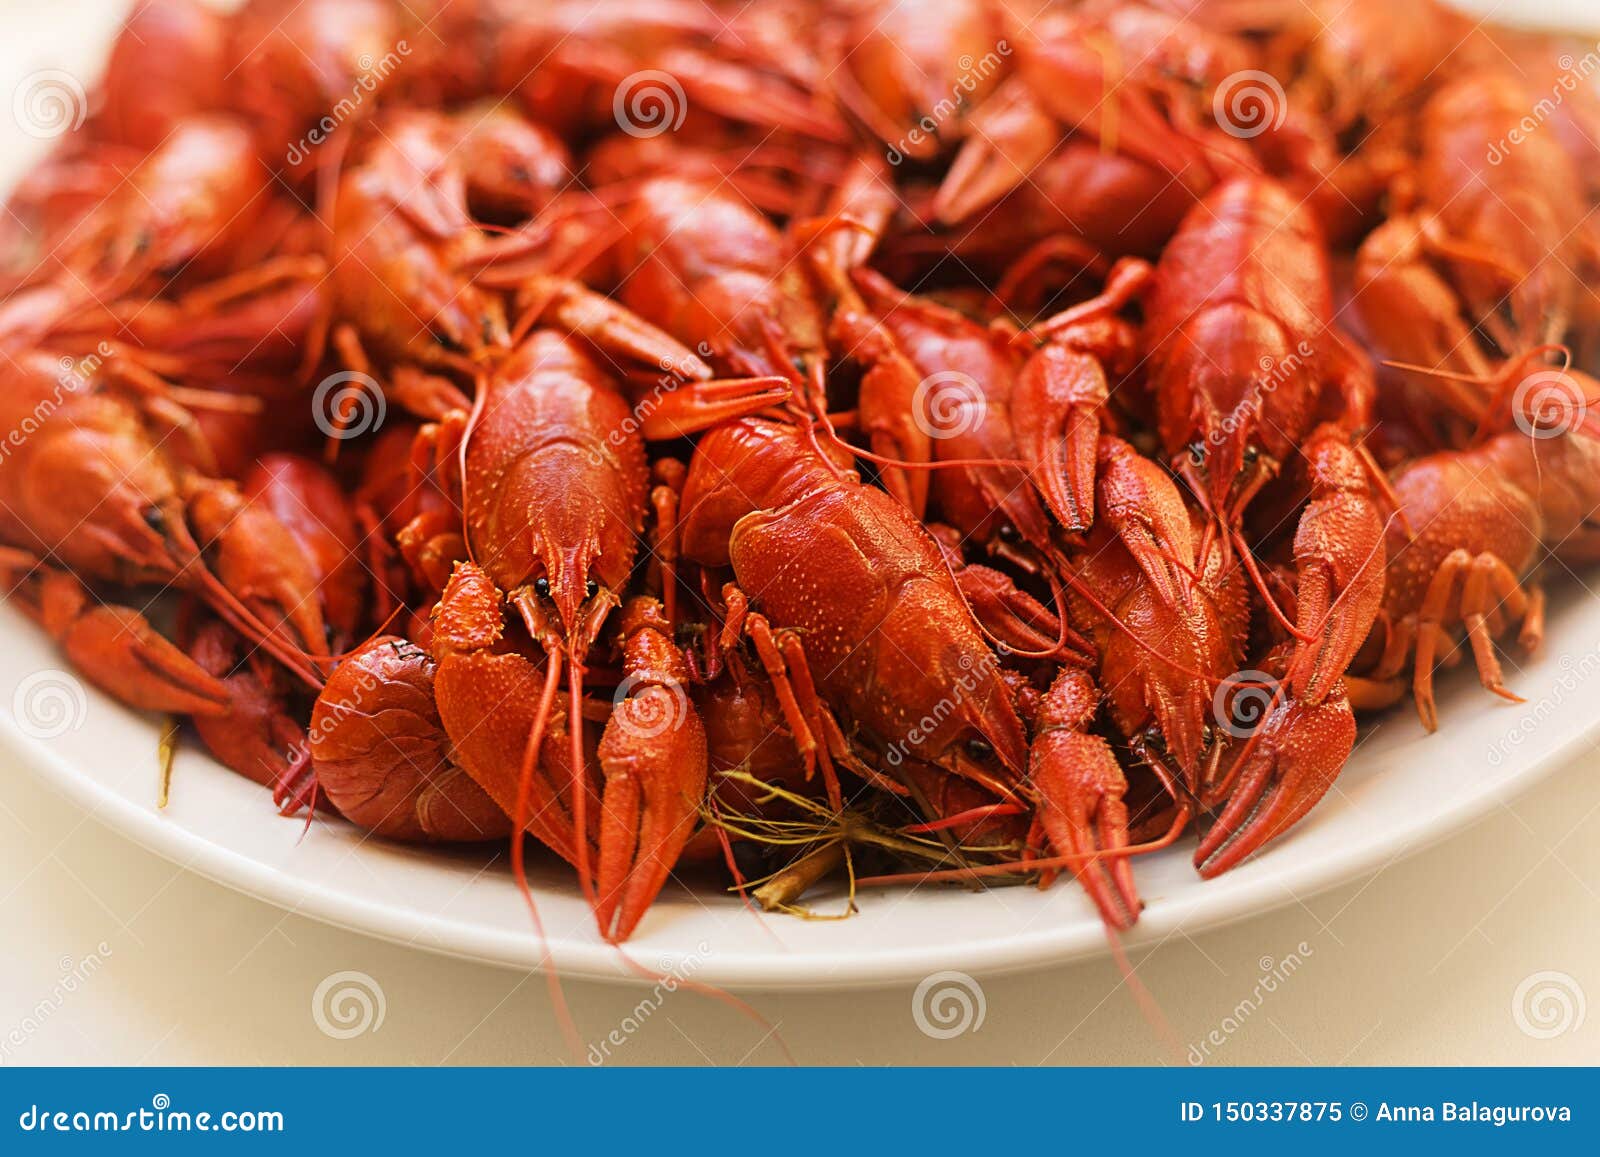 Кипящие раки. Boiled Crayfish. Crayfish on Plate.